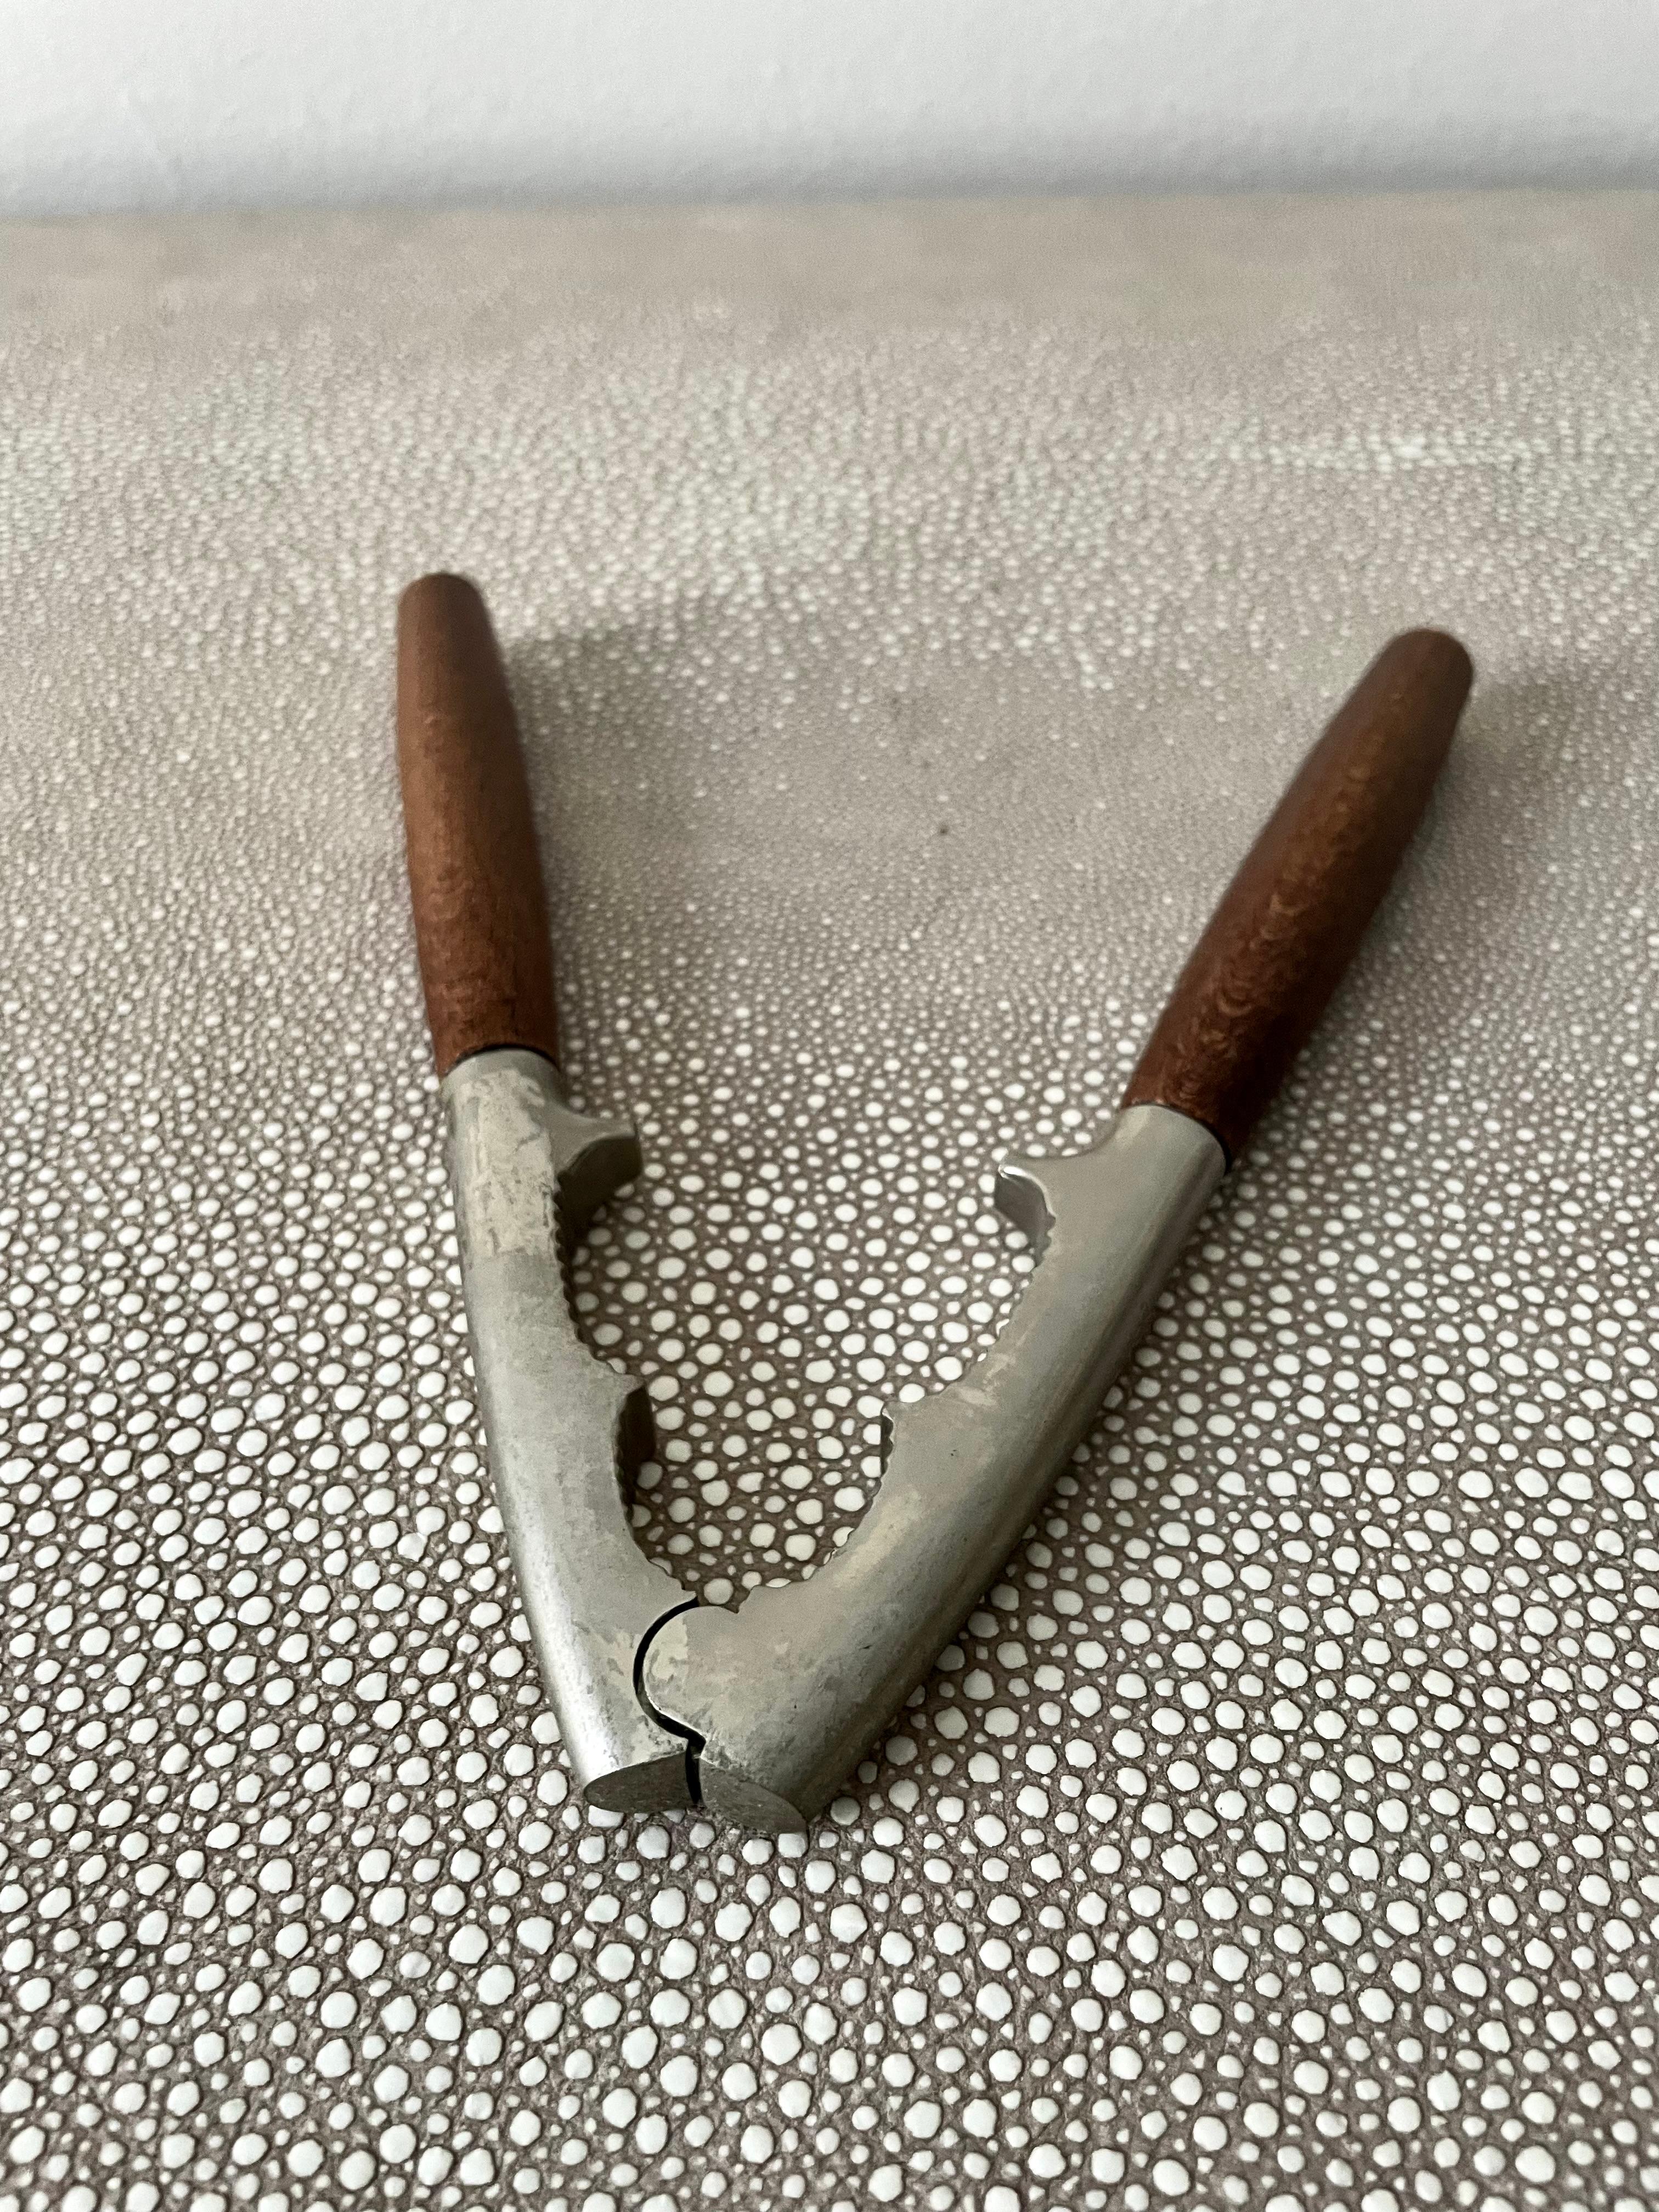 vintage nut cracker tool